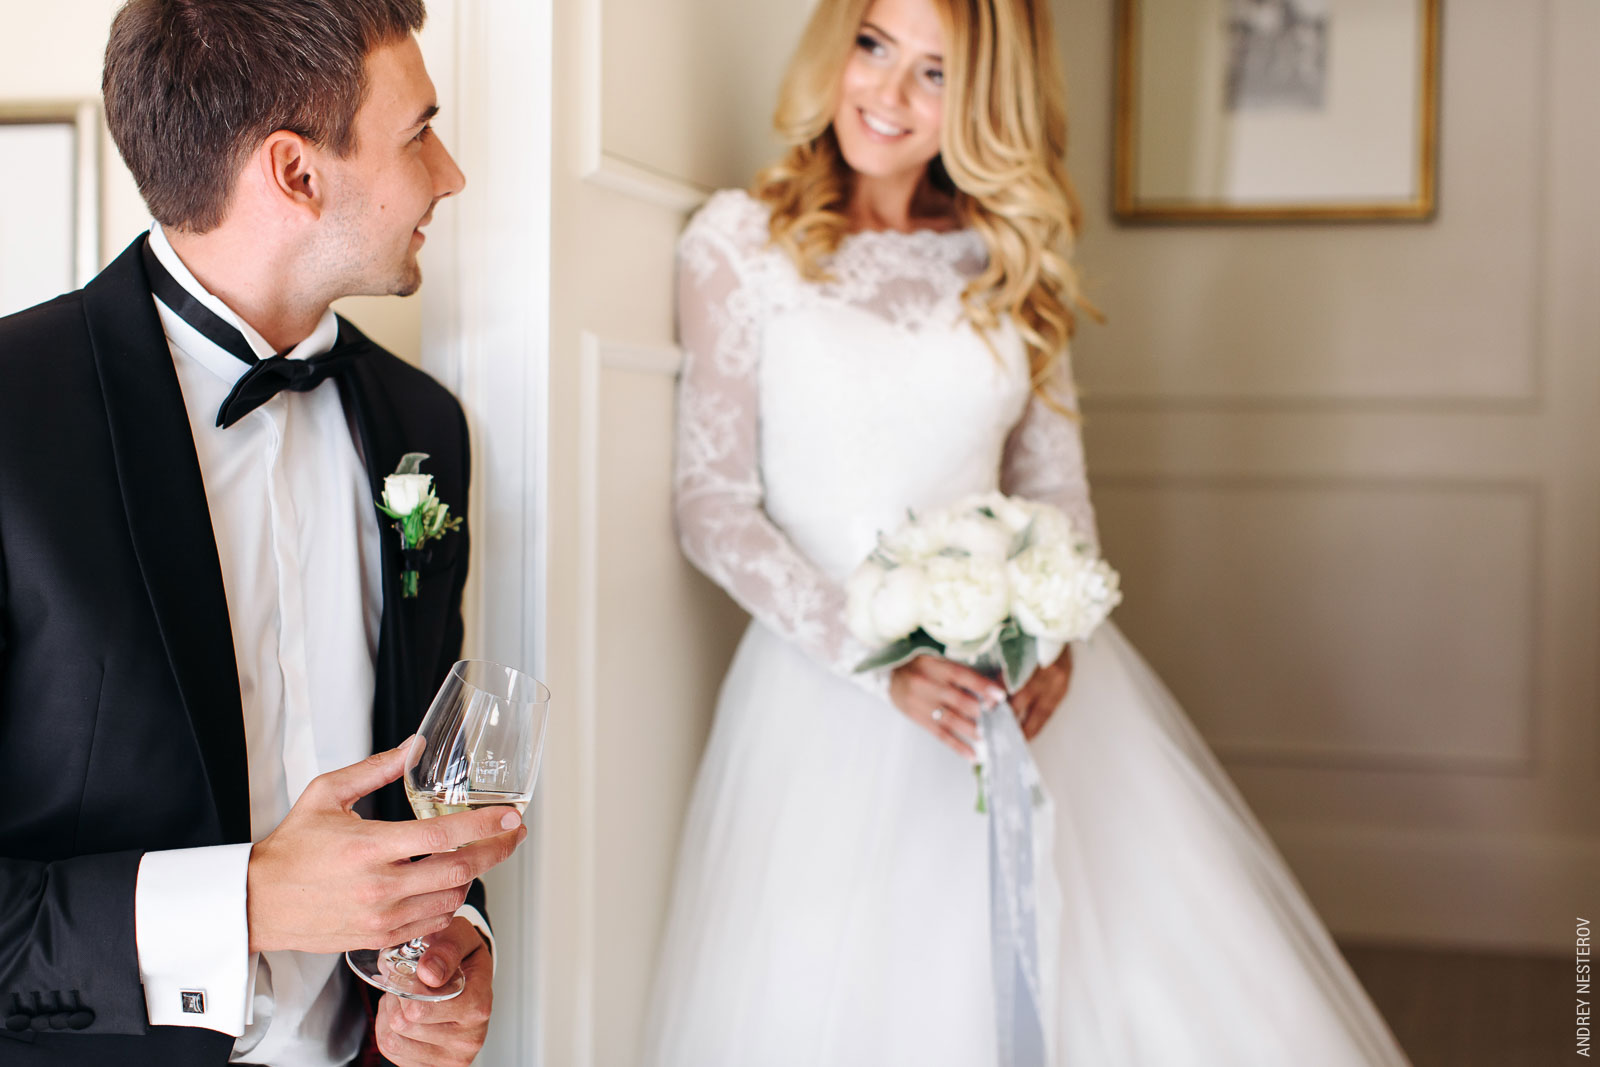 Какие образы выбрать невесте и жениху на свадьбу?